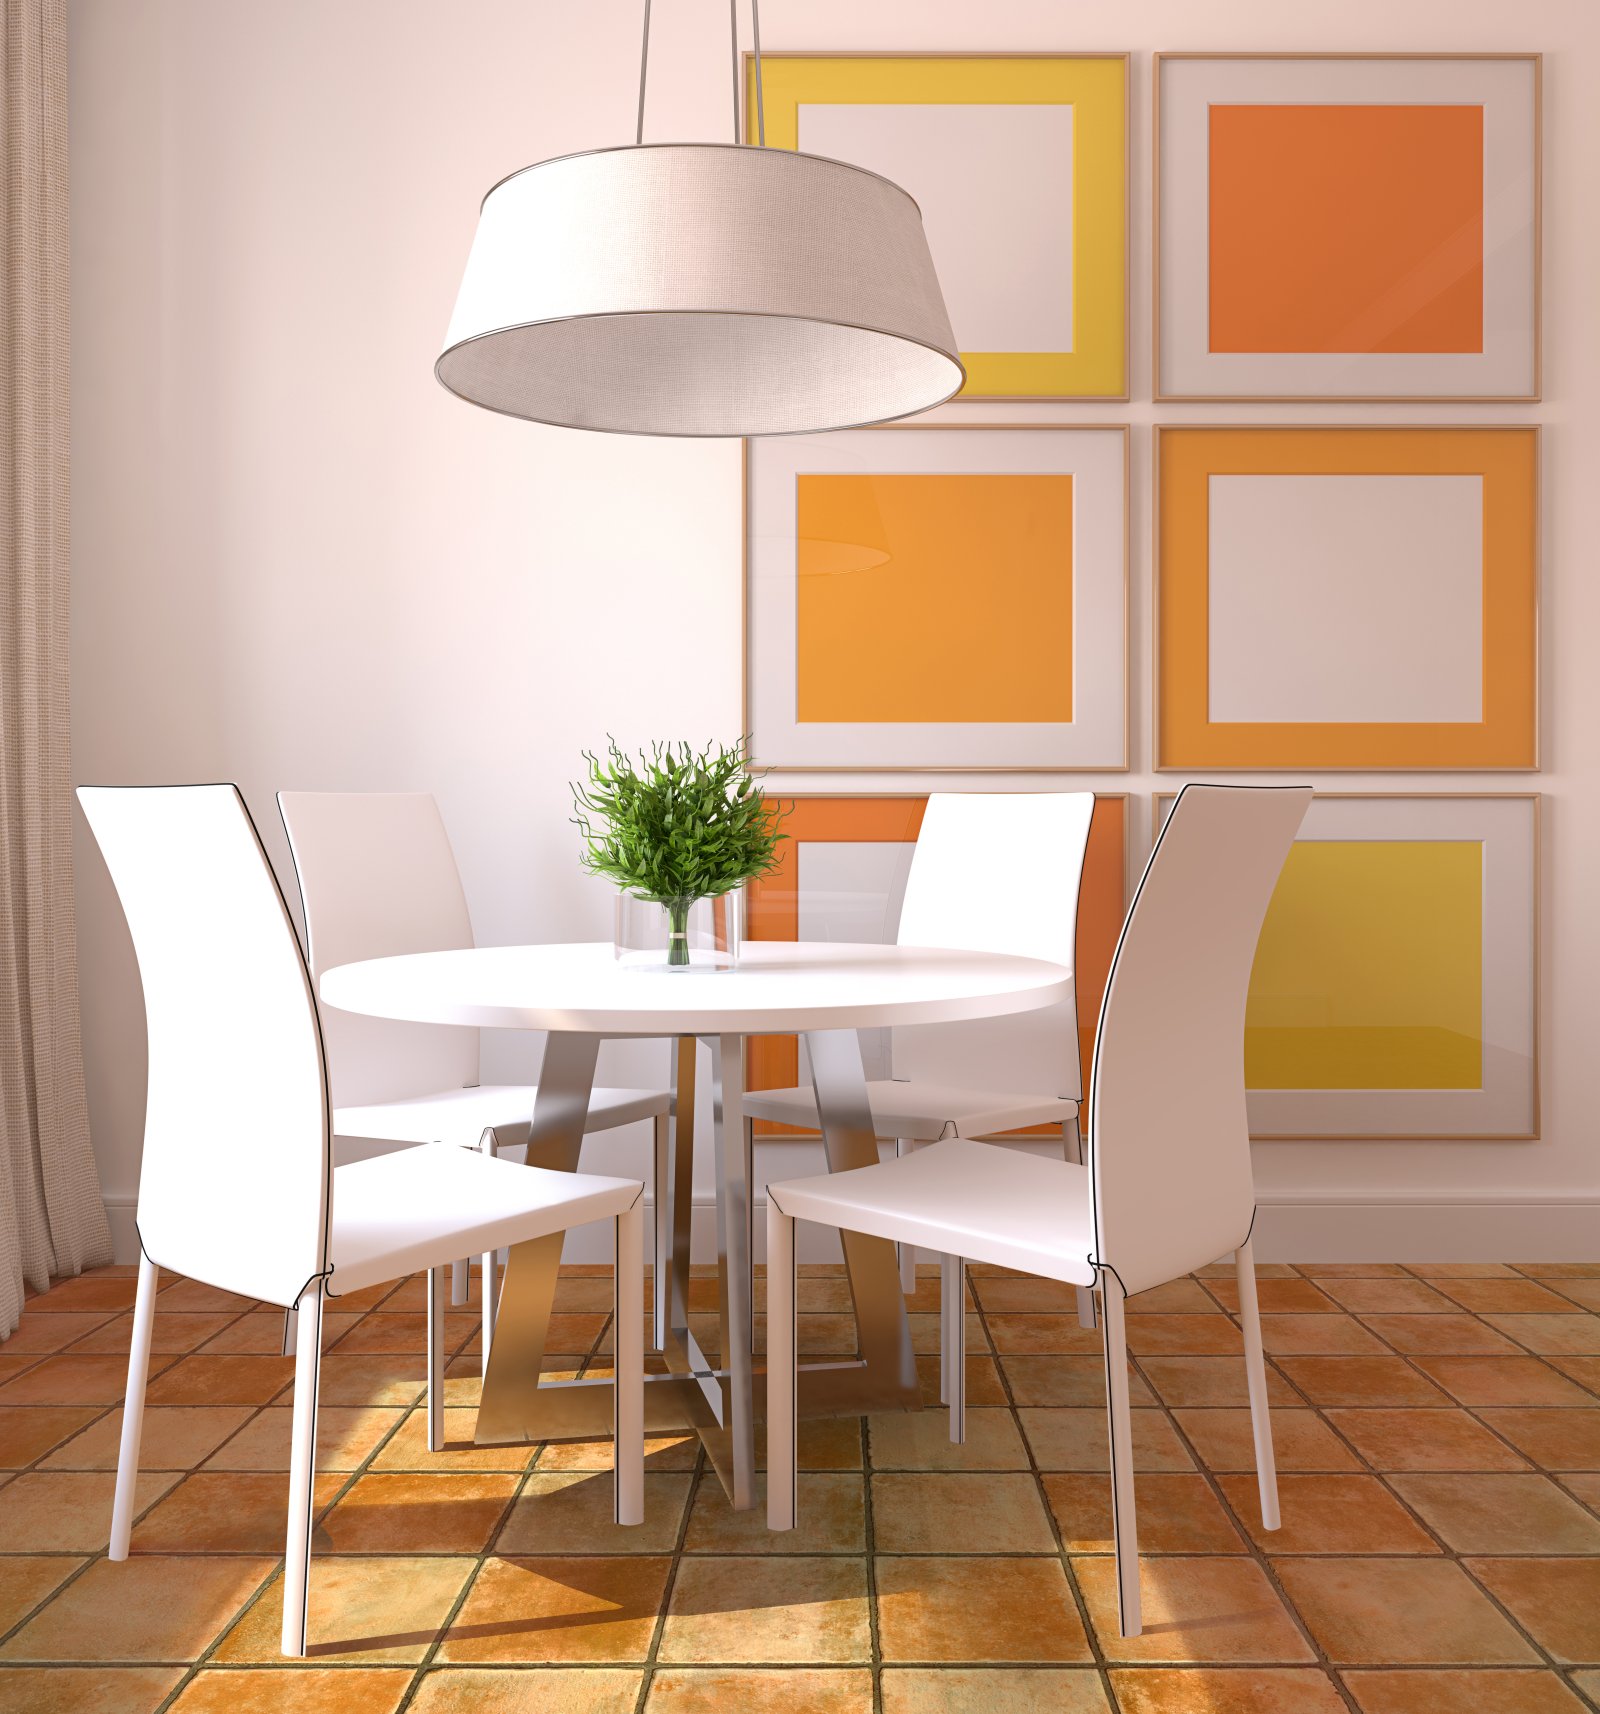 Những viên gạch lát sàn màu cam “cố tình bong tróc” cho cảm giác đơn sơ và gần gũi, những khung tranh đơn giản trên tường - không họa tiết, chỉ có màu sắc - cũng góp phần đem lại sự độc đáo cho phòng ăn này.